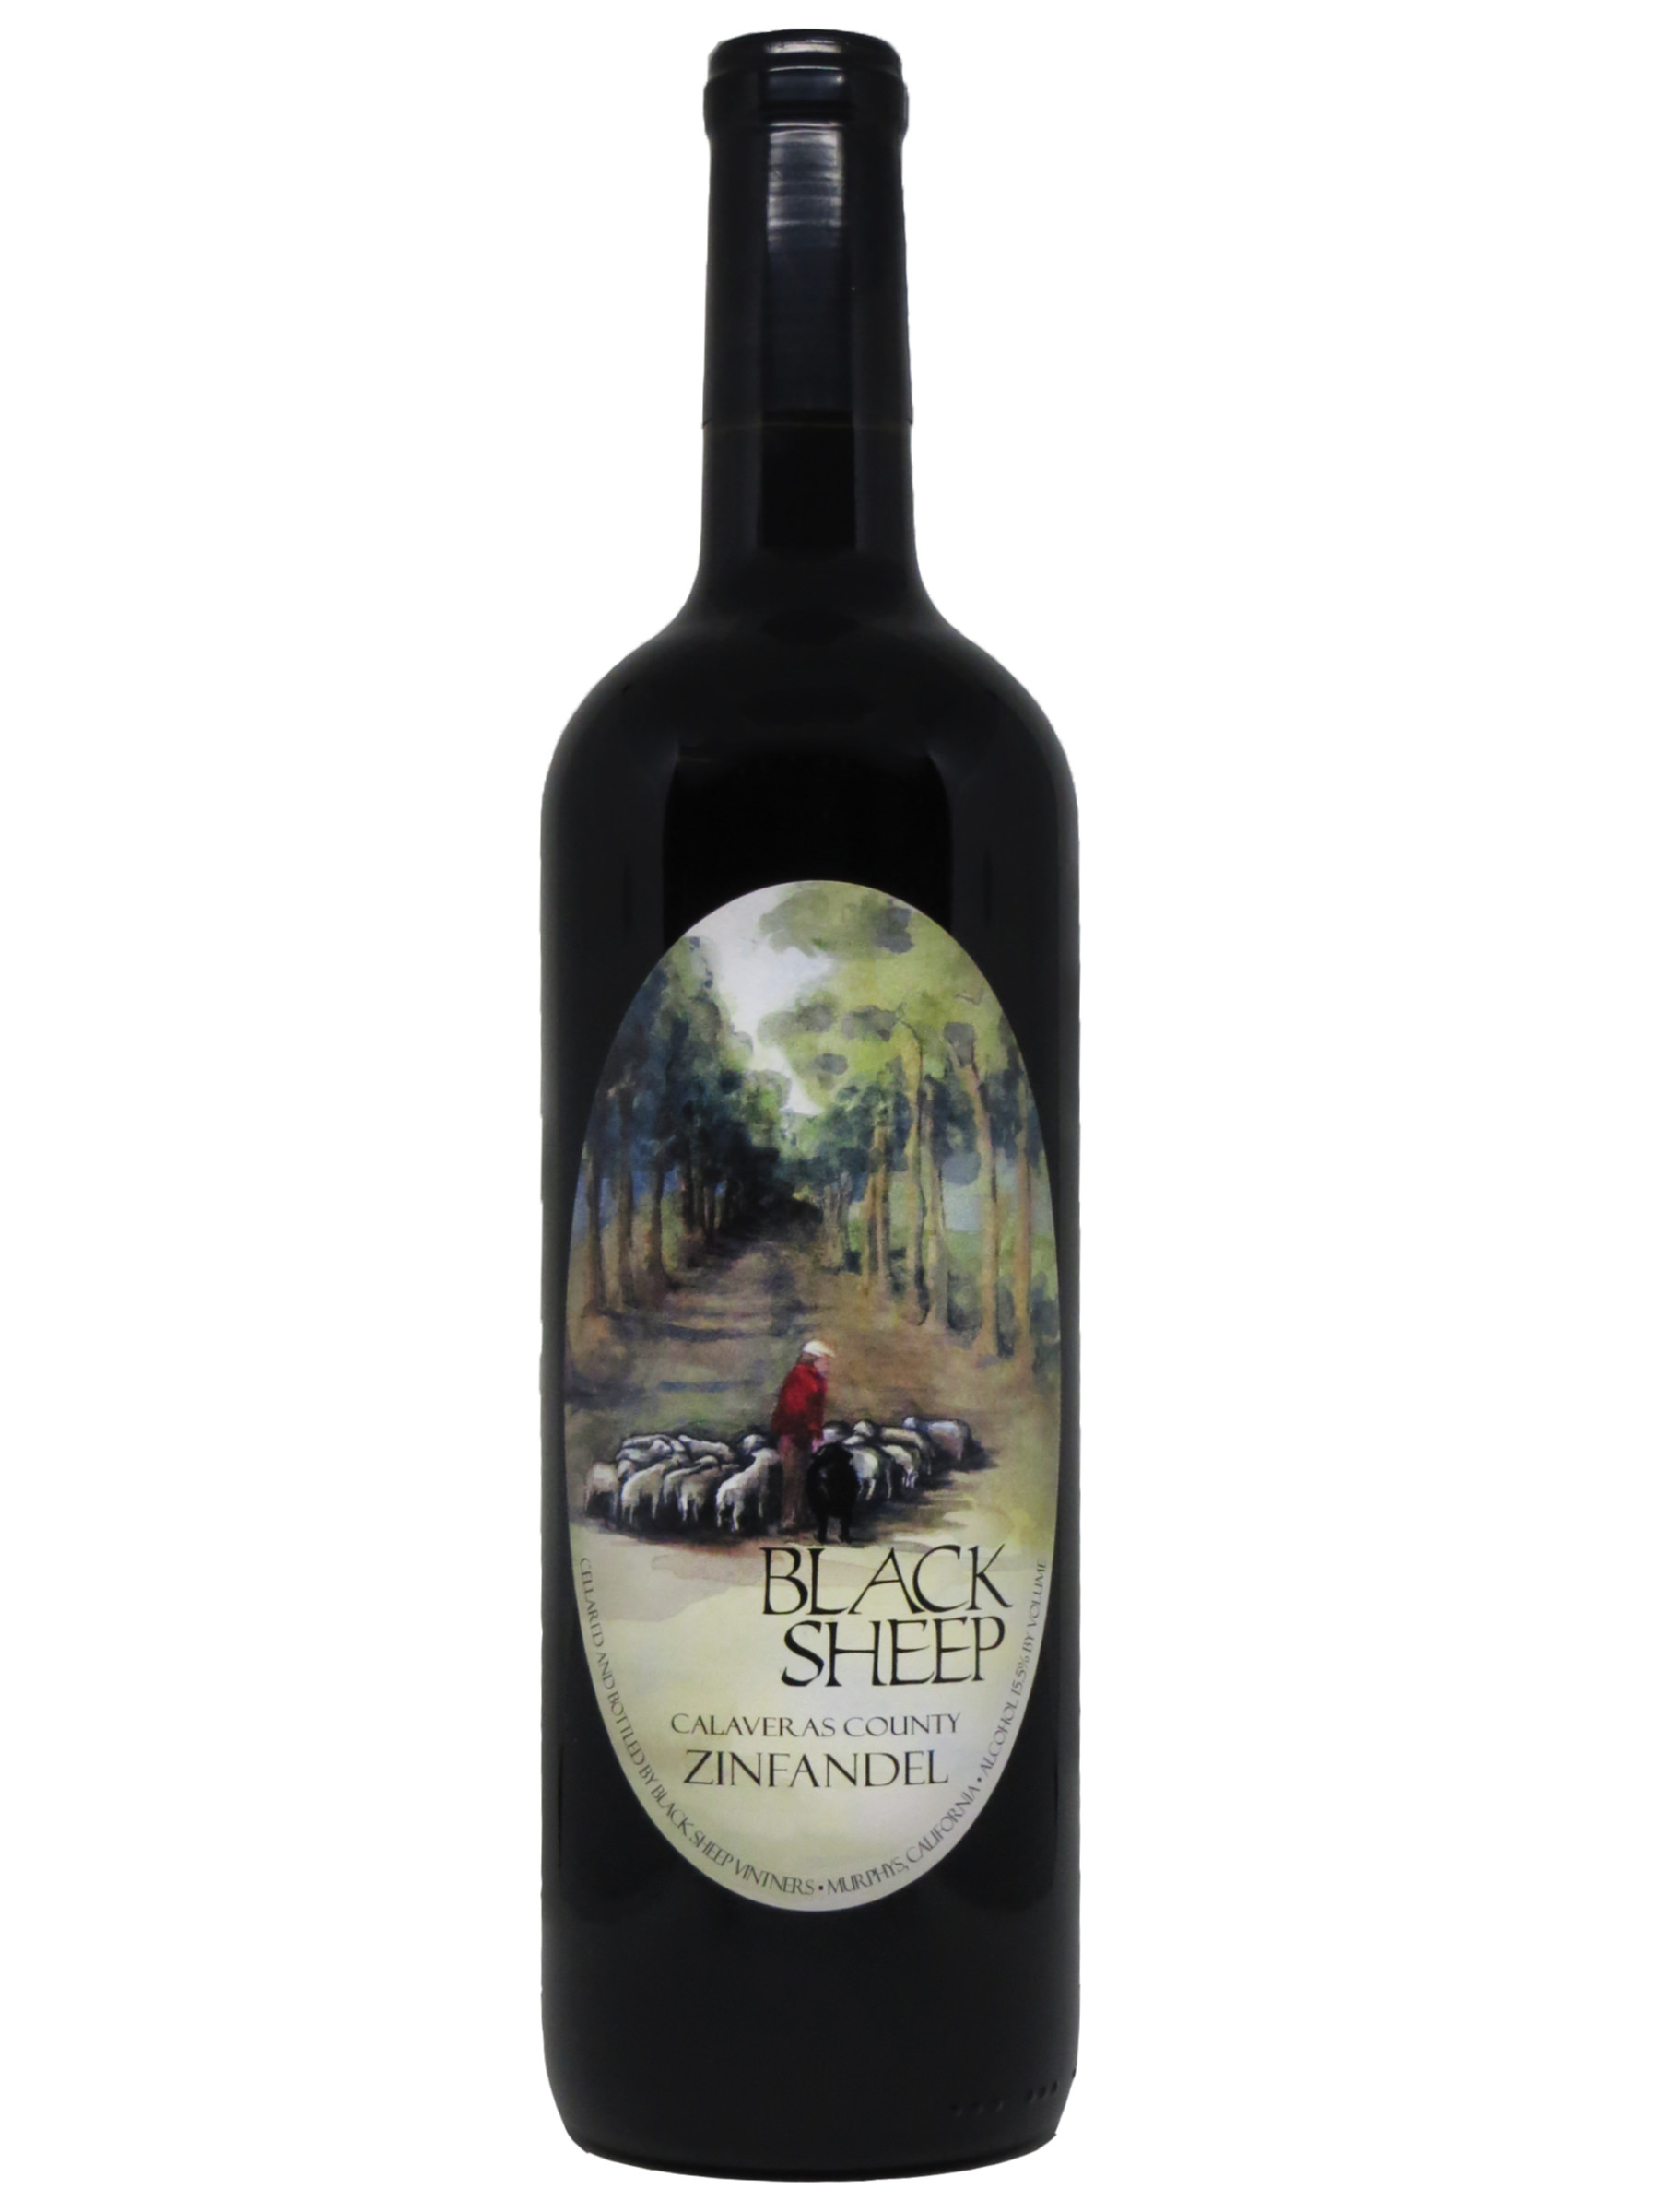 Zinfandel Challenge winning bottle of Black Sheep Winery's Calaveras County Zinfandel